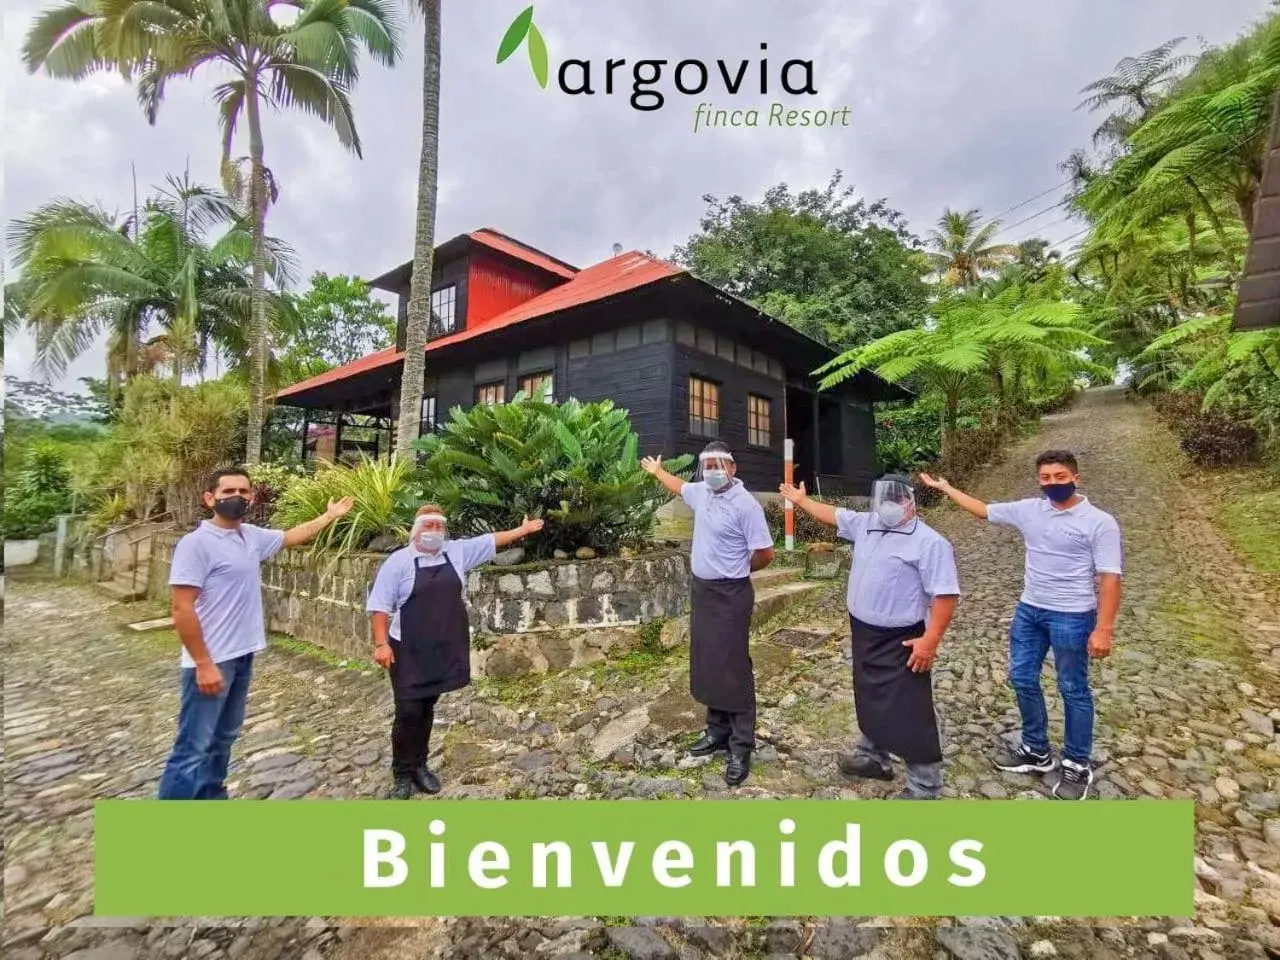 People in Argovia Finca Resort